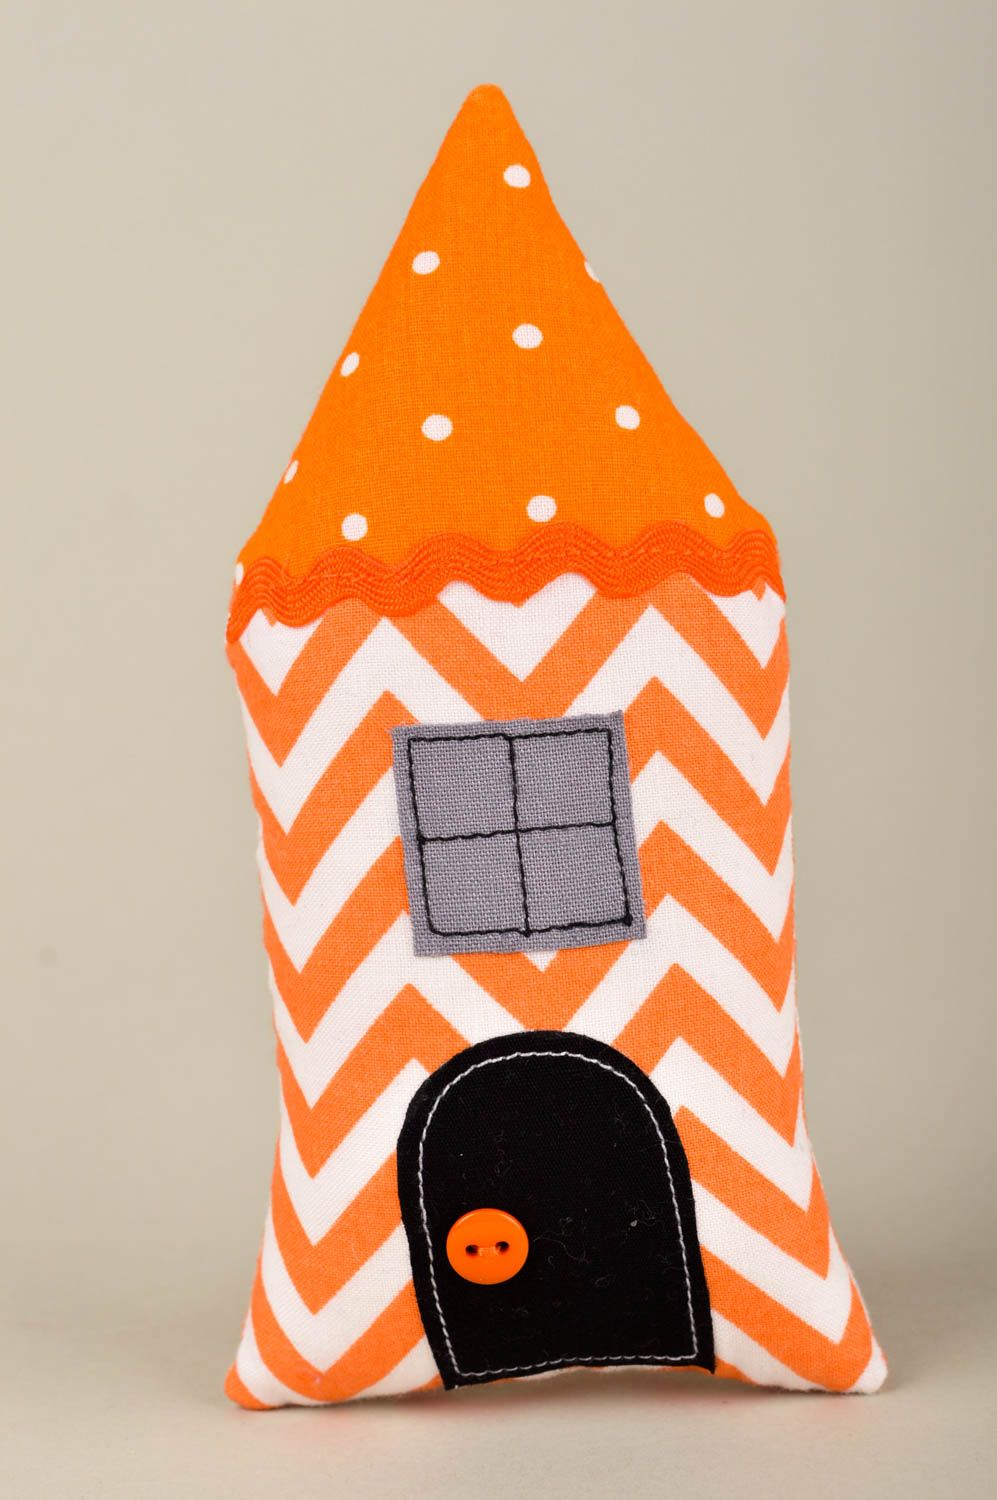 Игрушка ручной работы интересный подарок игрушка домик из ткани оранжевая фото 1